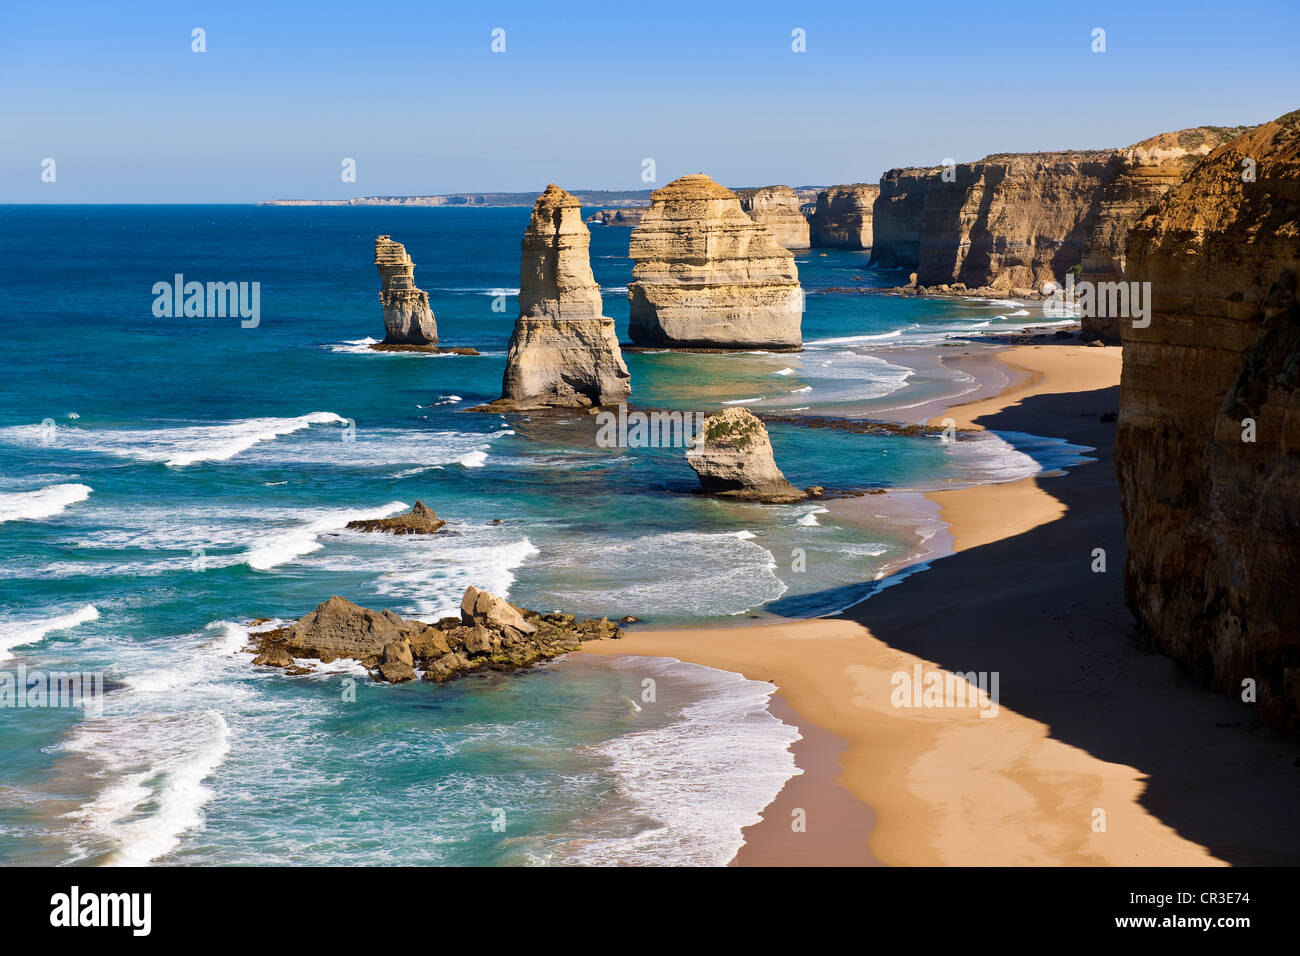 Australia, Victoria, Great Ocean Road, Parco Nazionale di Port Campbell, i dodici Apostoli, scogliere calcaree Foto Stock